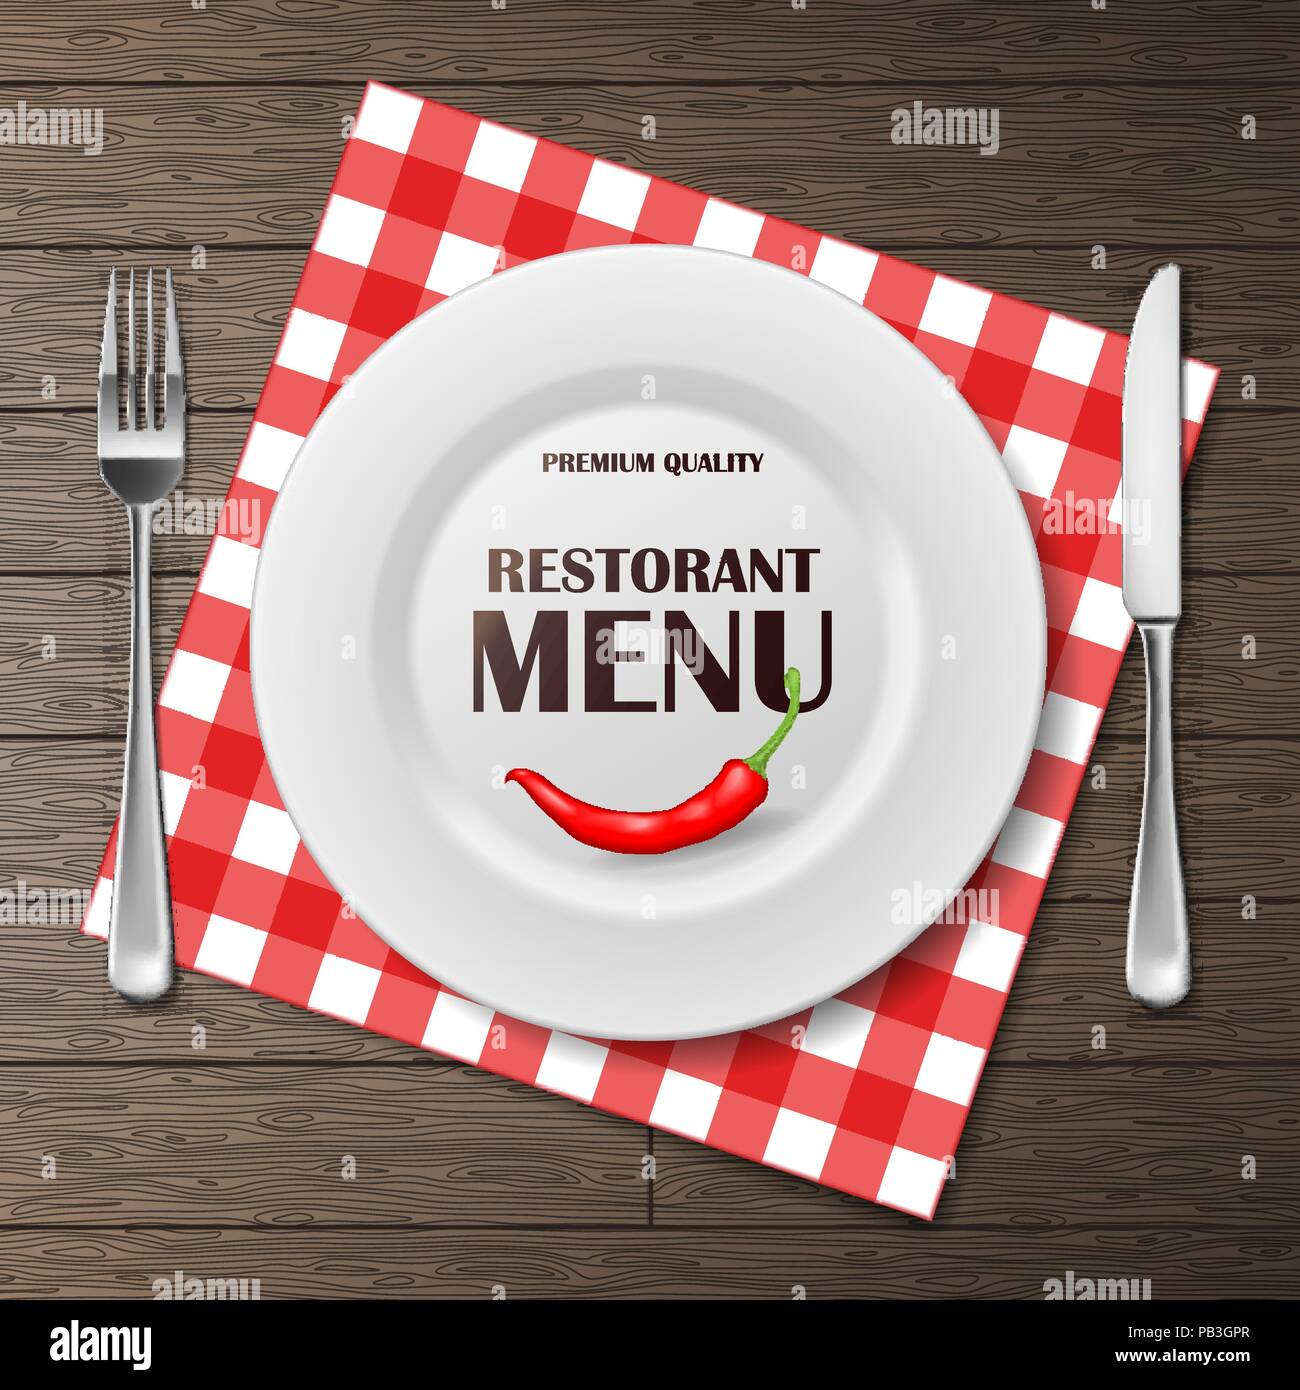 Restaurant Menü vordere Banner mit Teller und Besteck auf die Serviette gesetzt. realistische Restaurant Menü Hintergrund Werbung Plakat Vector Illustration Stock Vektor